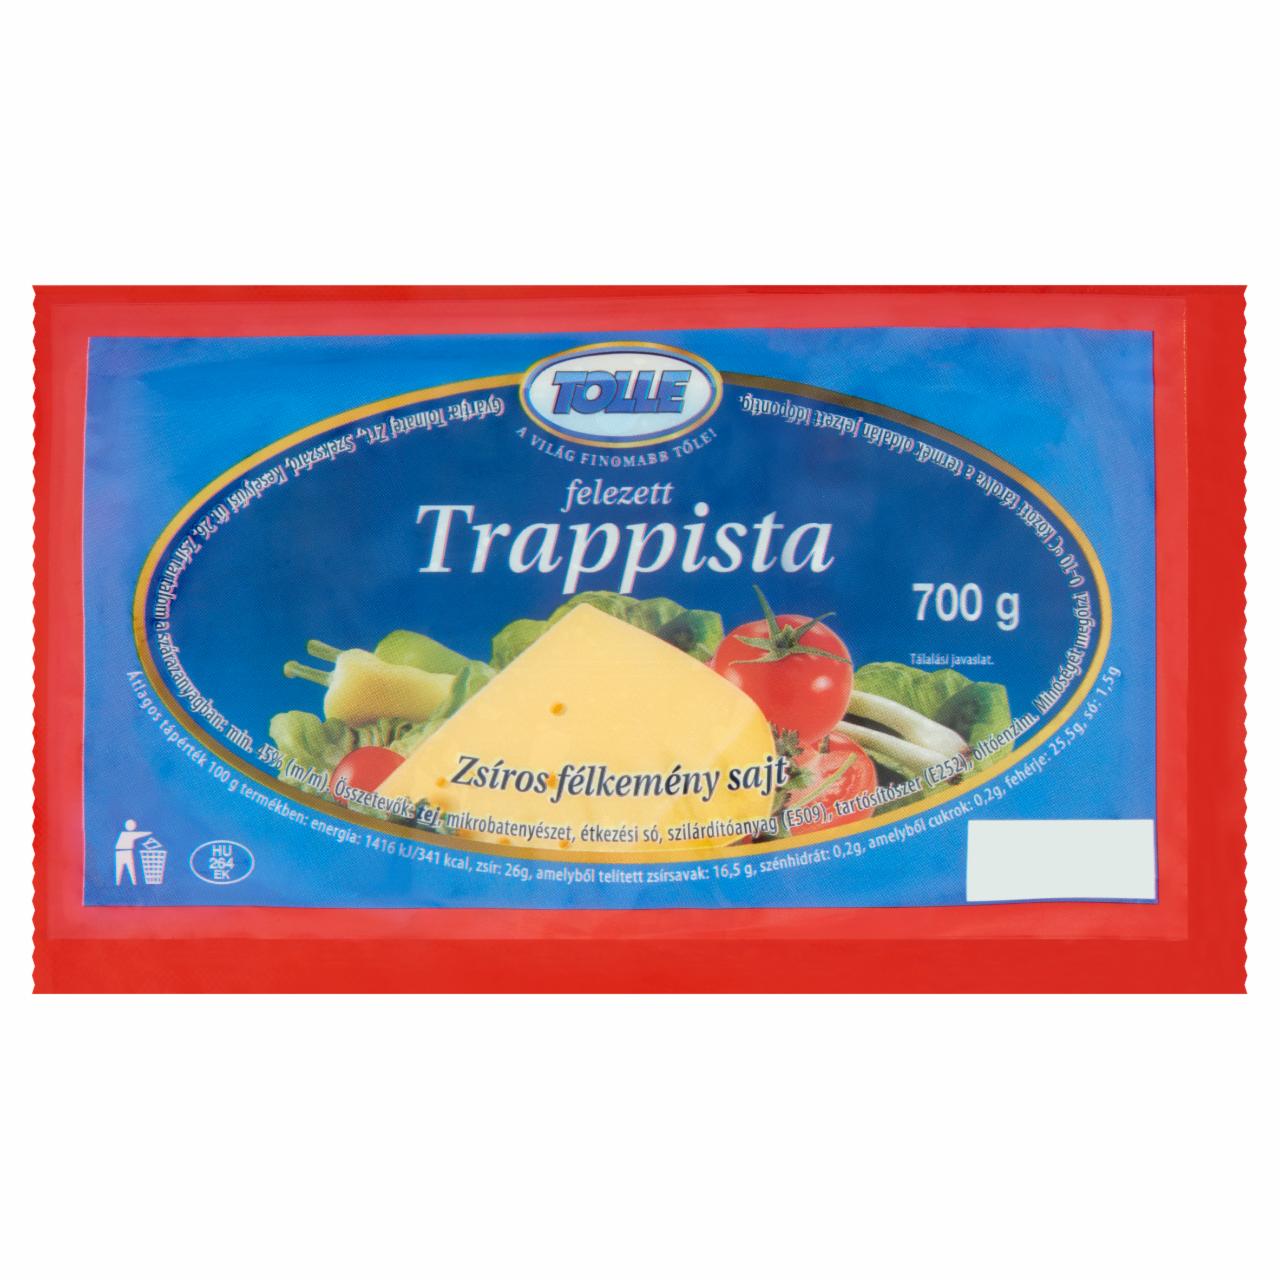 Képek - Tolle Trappista felezett zsíros félkemény sajt 700 g